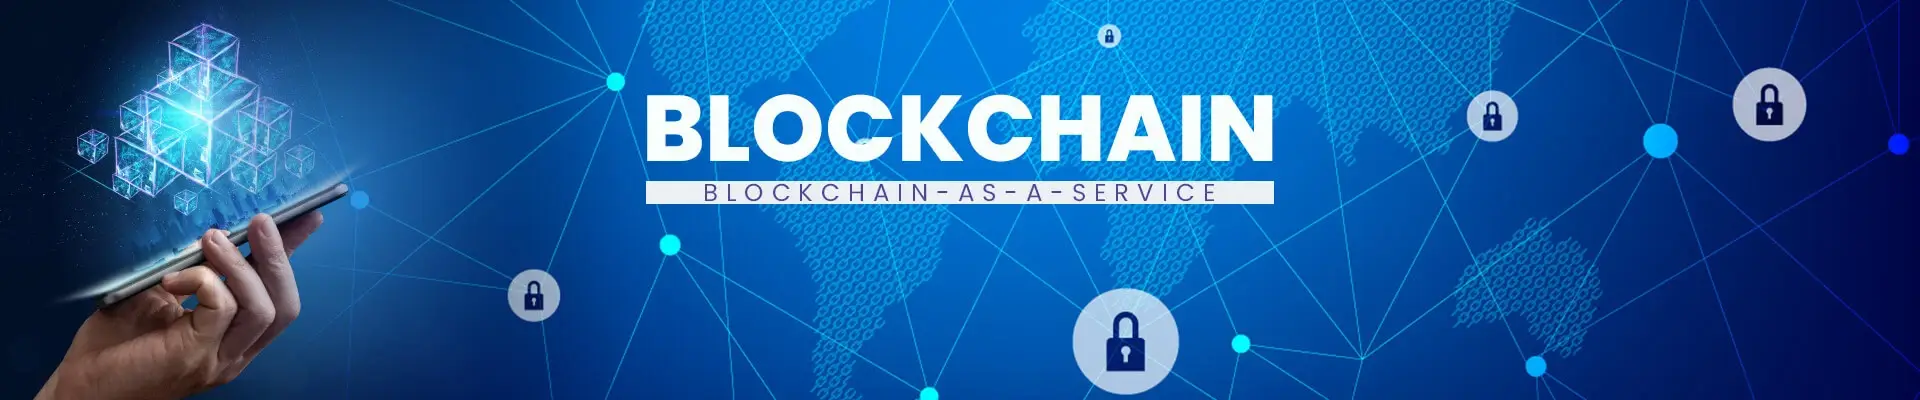 Blockchain as a Service